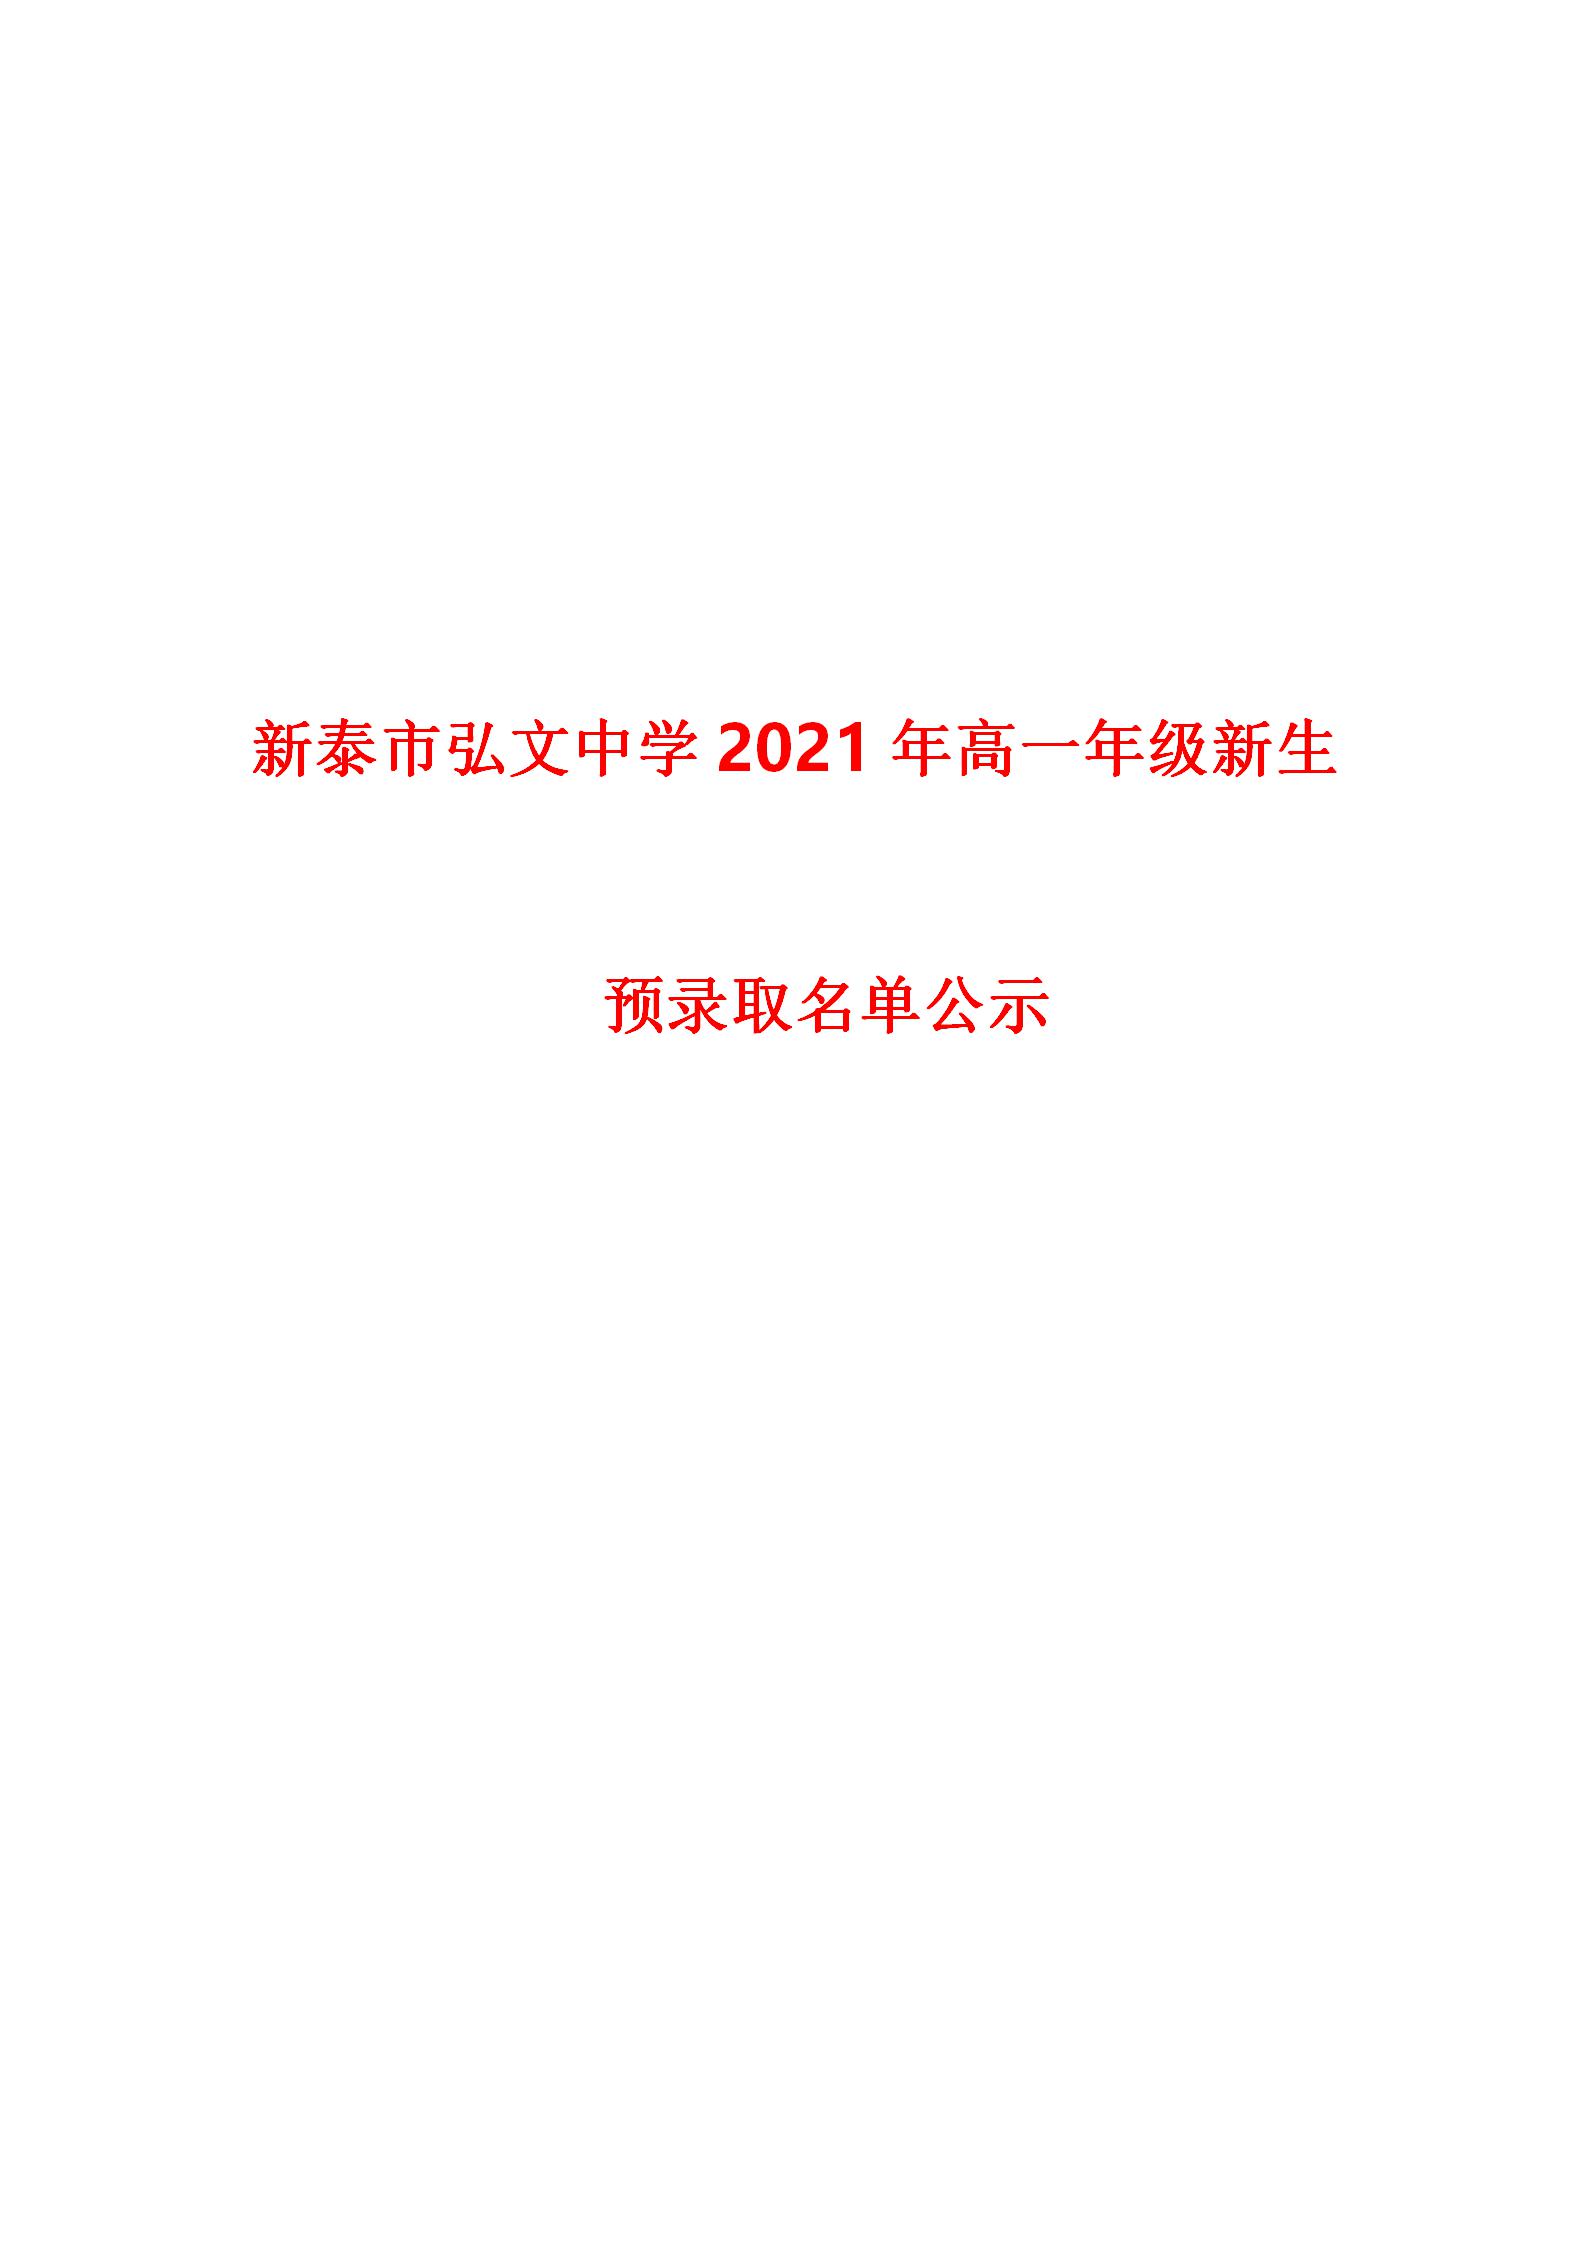 新泰市弘文中学2021年高一年级新生预录取名单公示